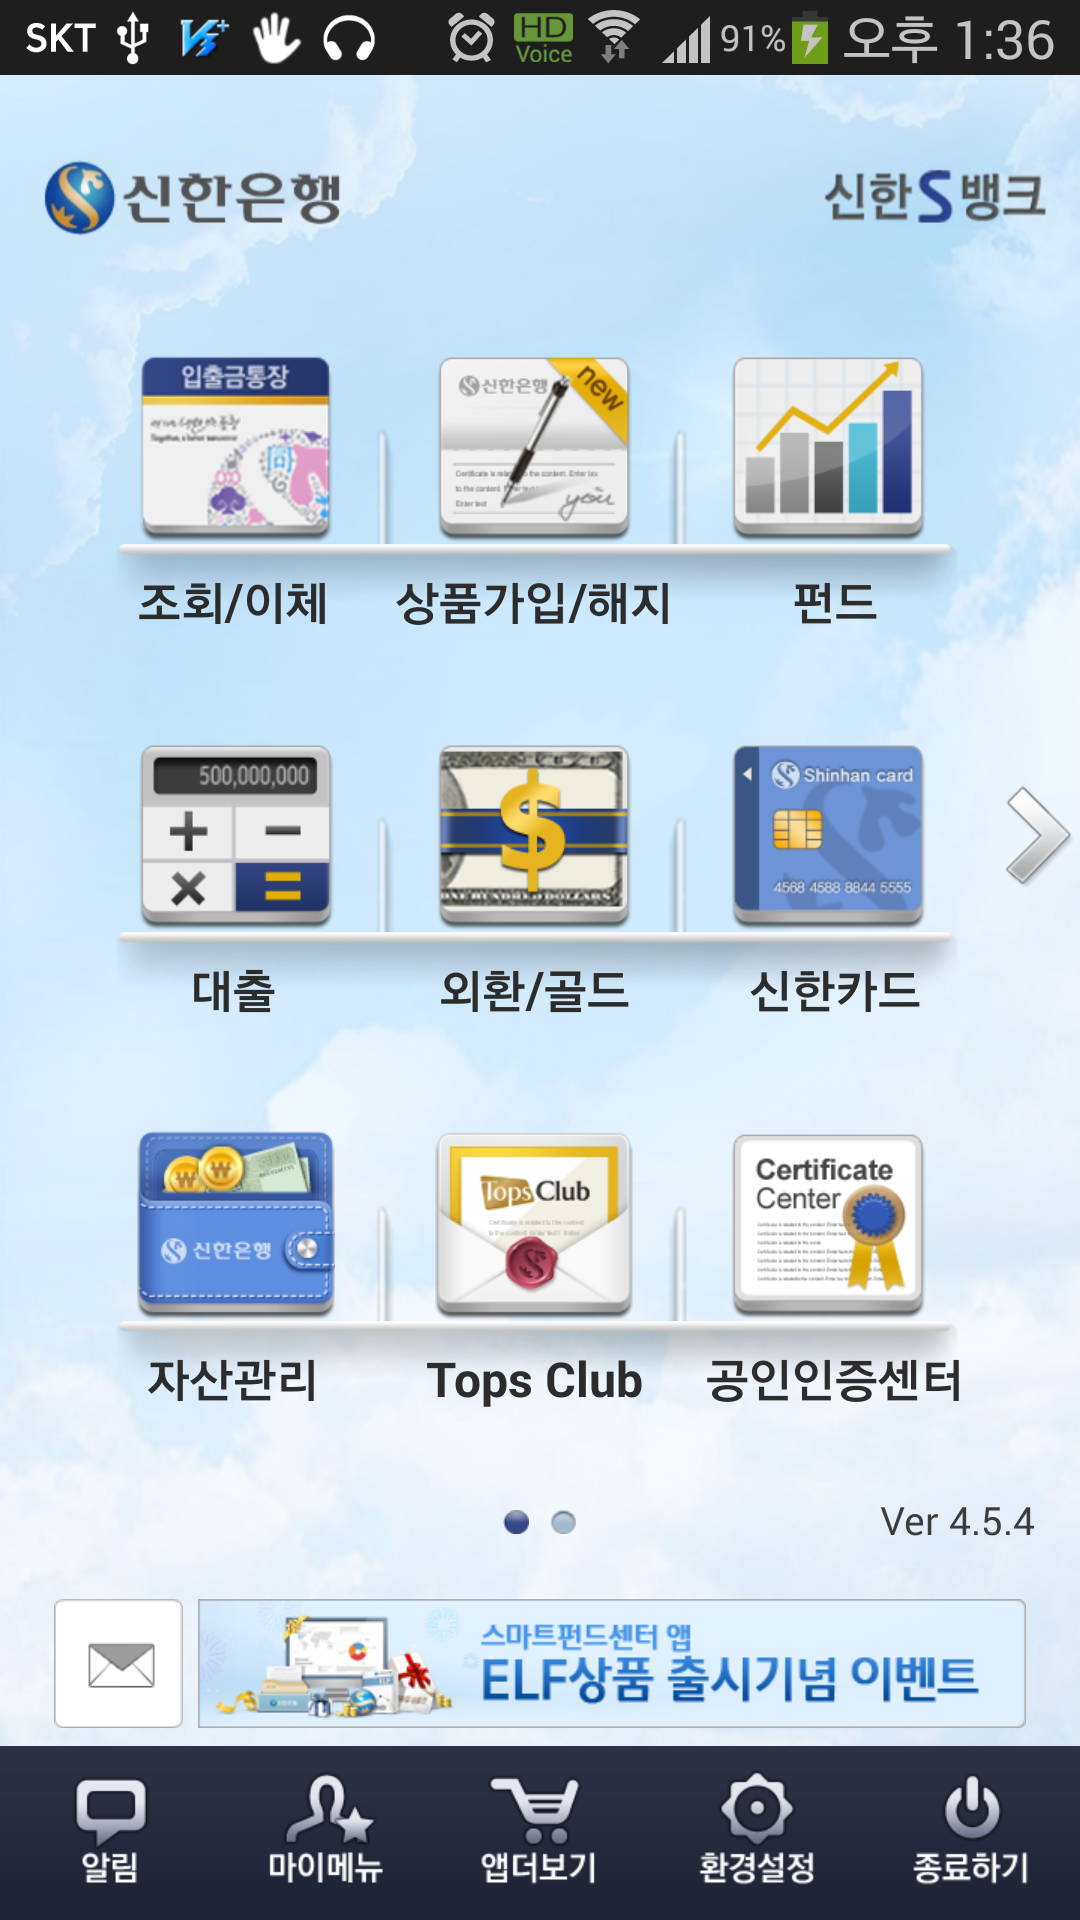 신한은행 S뱅크 ver4.5 (Android) 스크릿샷